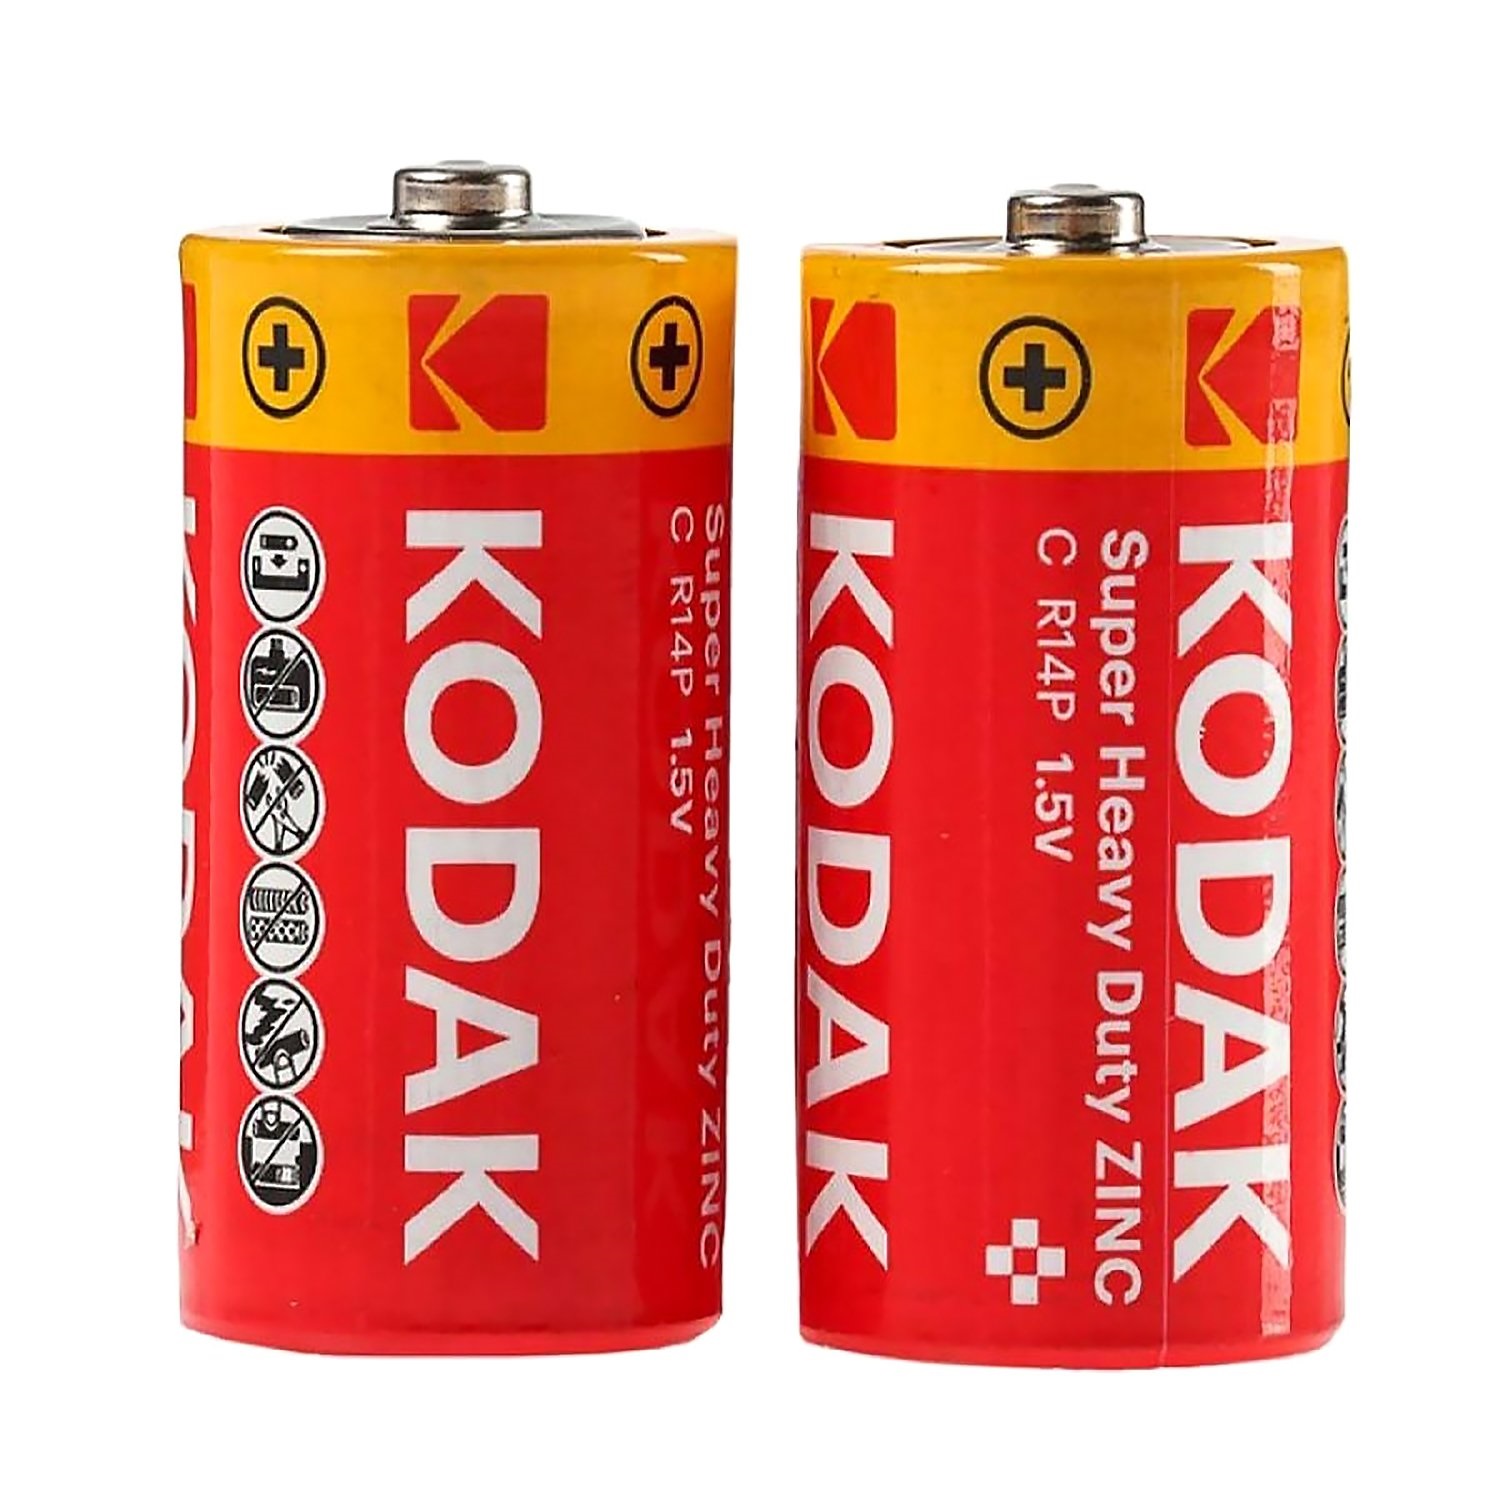 Элемент питания b. Элемент питания Kodak Heavy Duty r20 Extra (KDHZ 2s) (б/б) (24/144/6912). Батарейки "Kodak" r-14 Extra. Батарейка Kodak Extra Heavy Duty r-14-2s. Kodak r20/2sh super Heavy Duty.